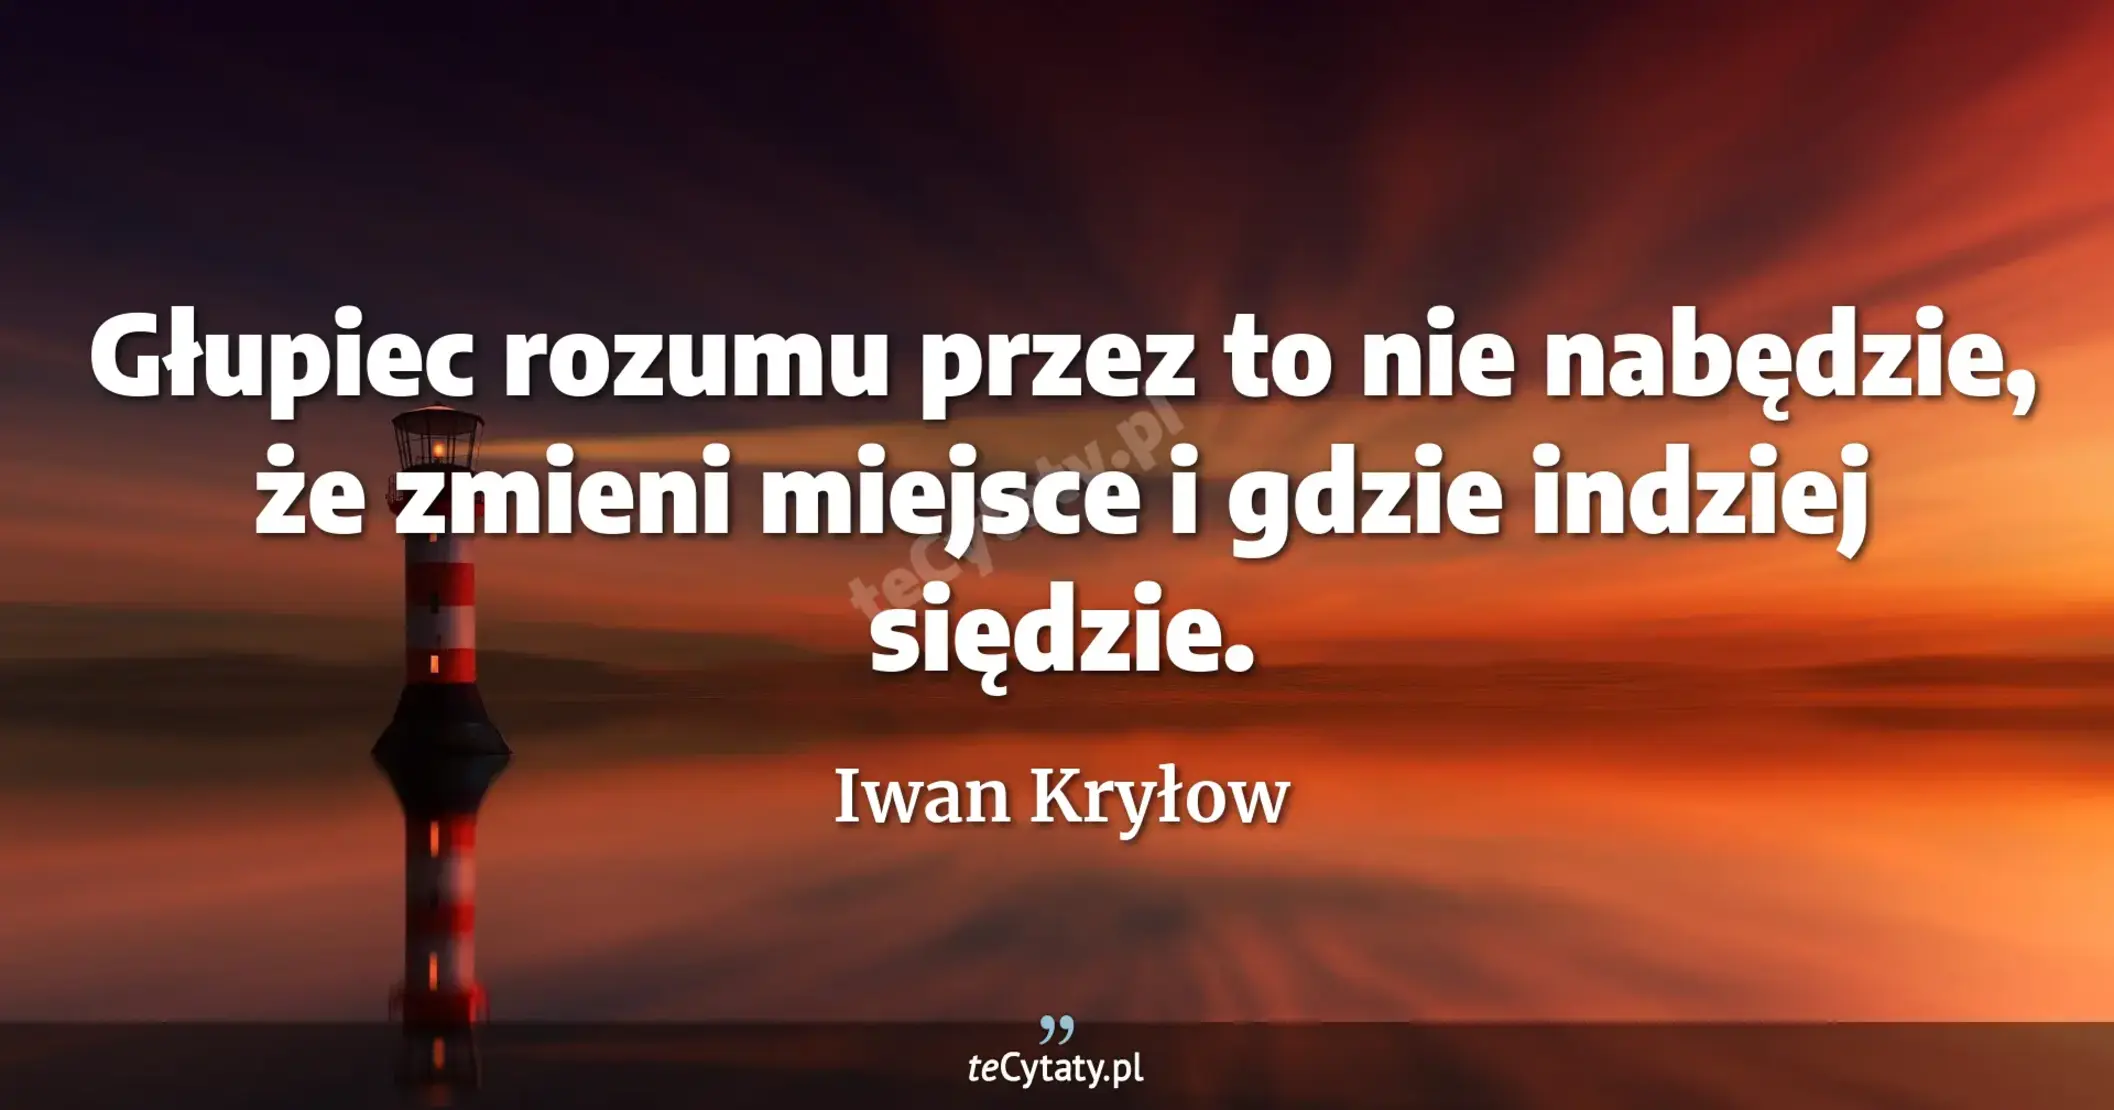 Głupiec rozumu przez to nie nabędzie, <br> że zmieni miejsce i gdzie indziej siędzie. - Iwan Kryłow